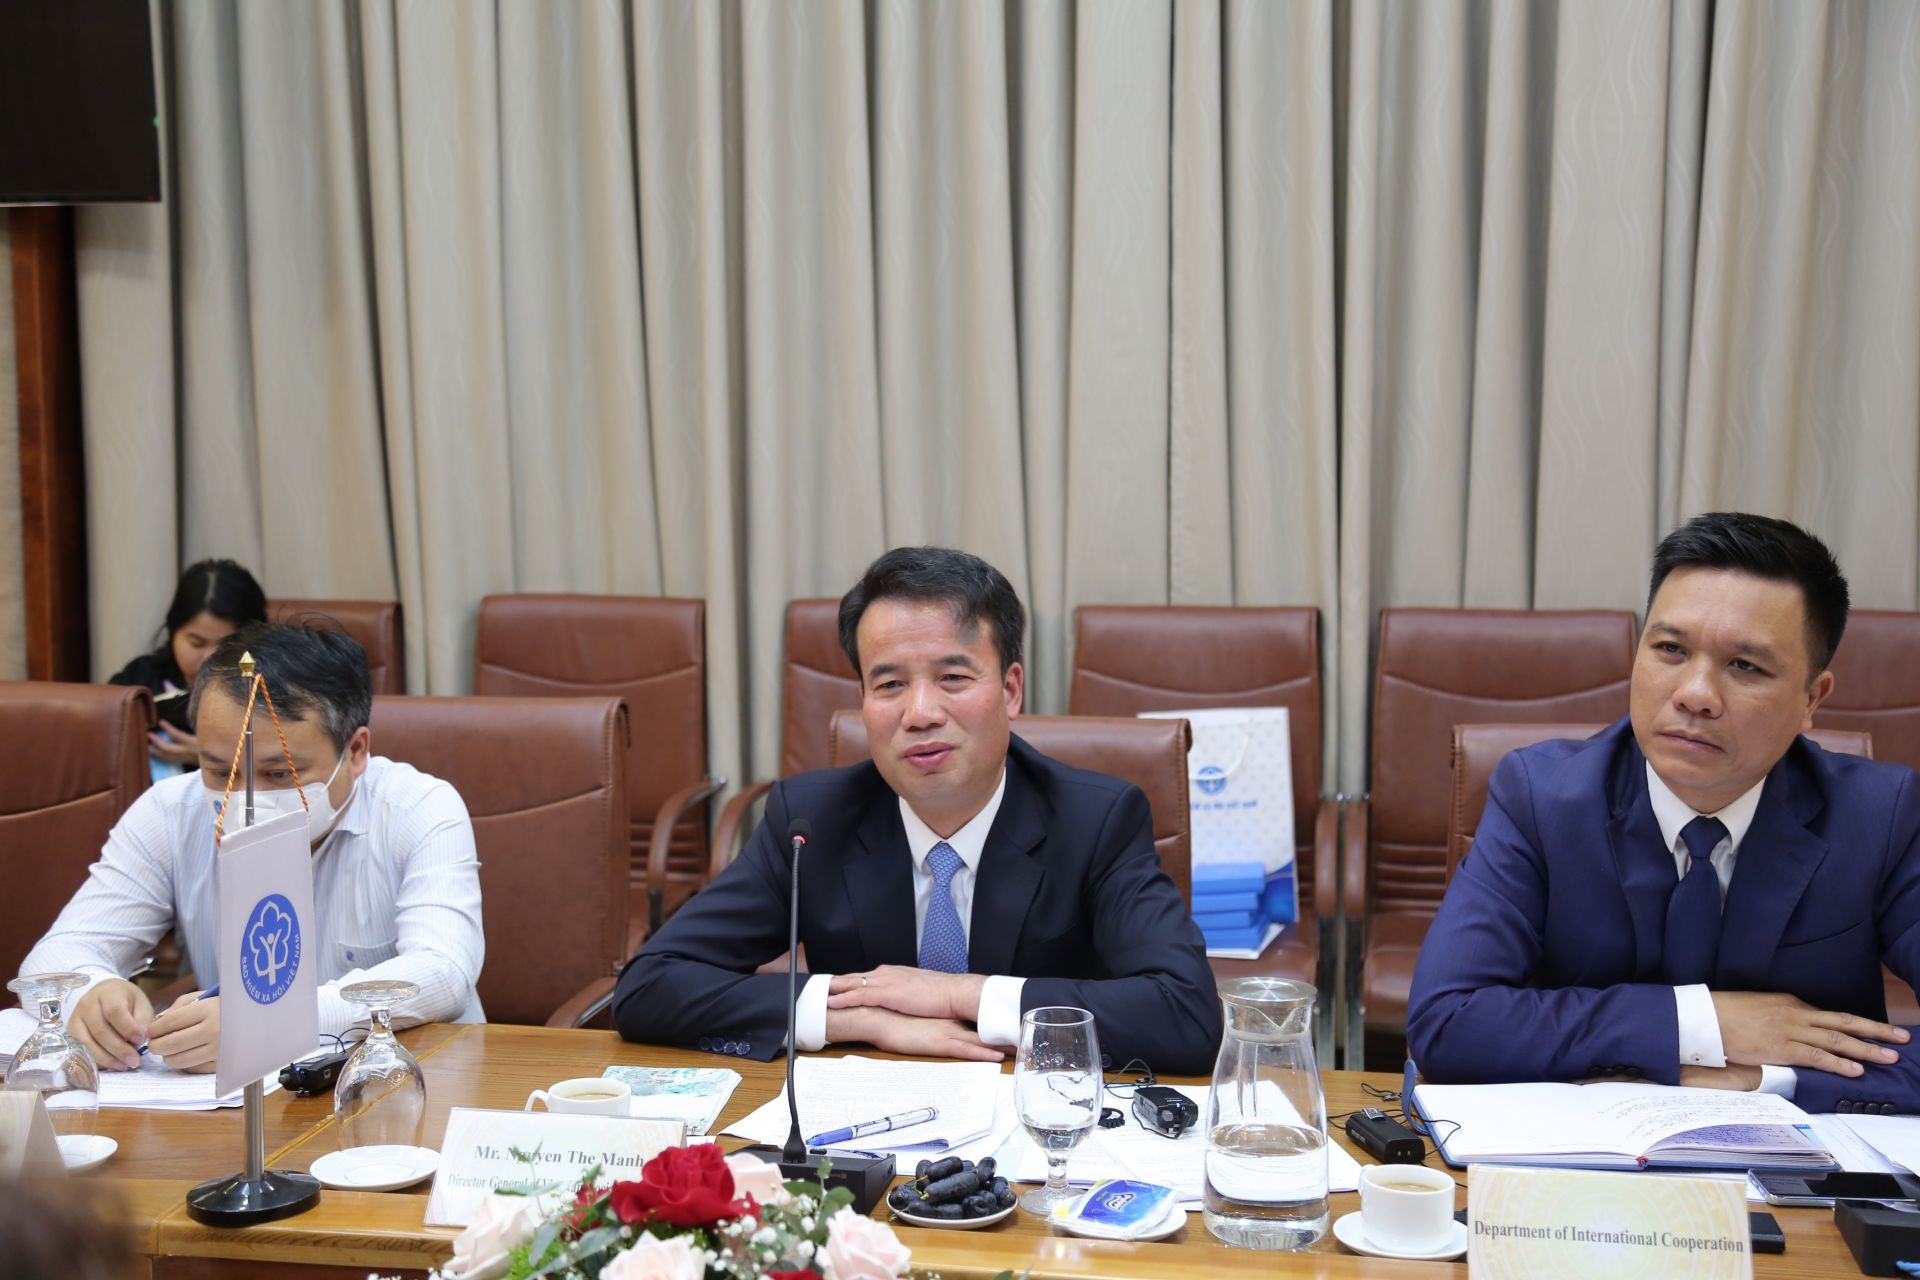 Tổng Giám đốc Nguyễn Thế Mạnh: Hoạt động hợp tác giữa BHXH Việt Nam và WB đóng góp tích cực trong quá trình phát triển và hiện đại hóa ngành BHXH Việt Nam.